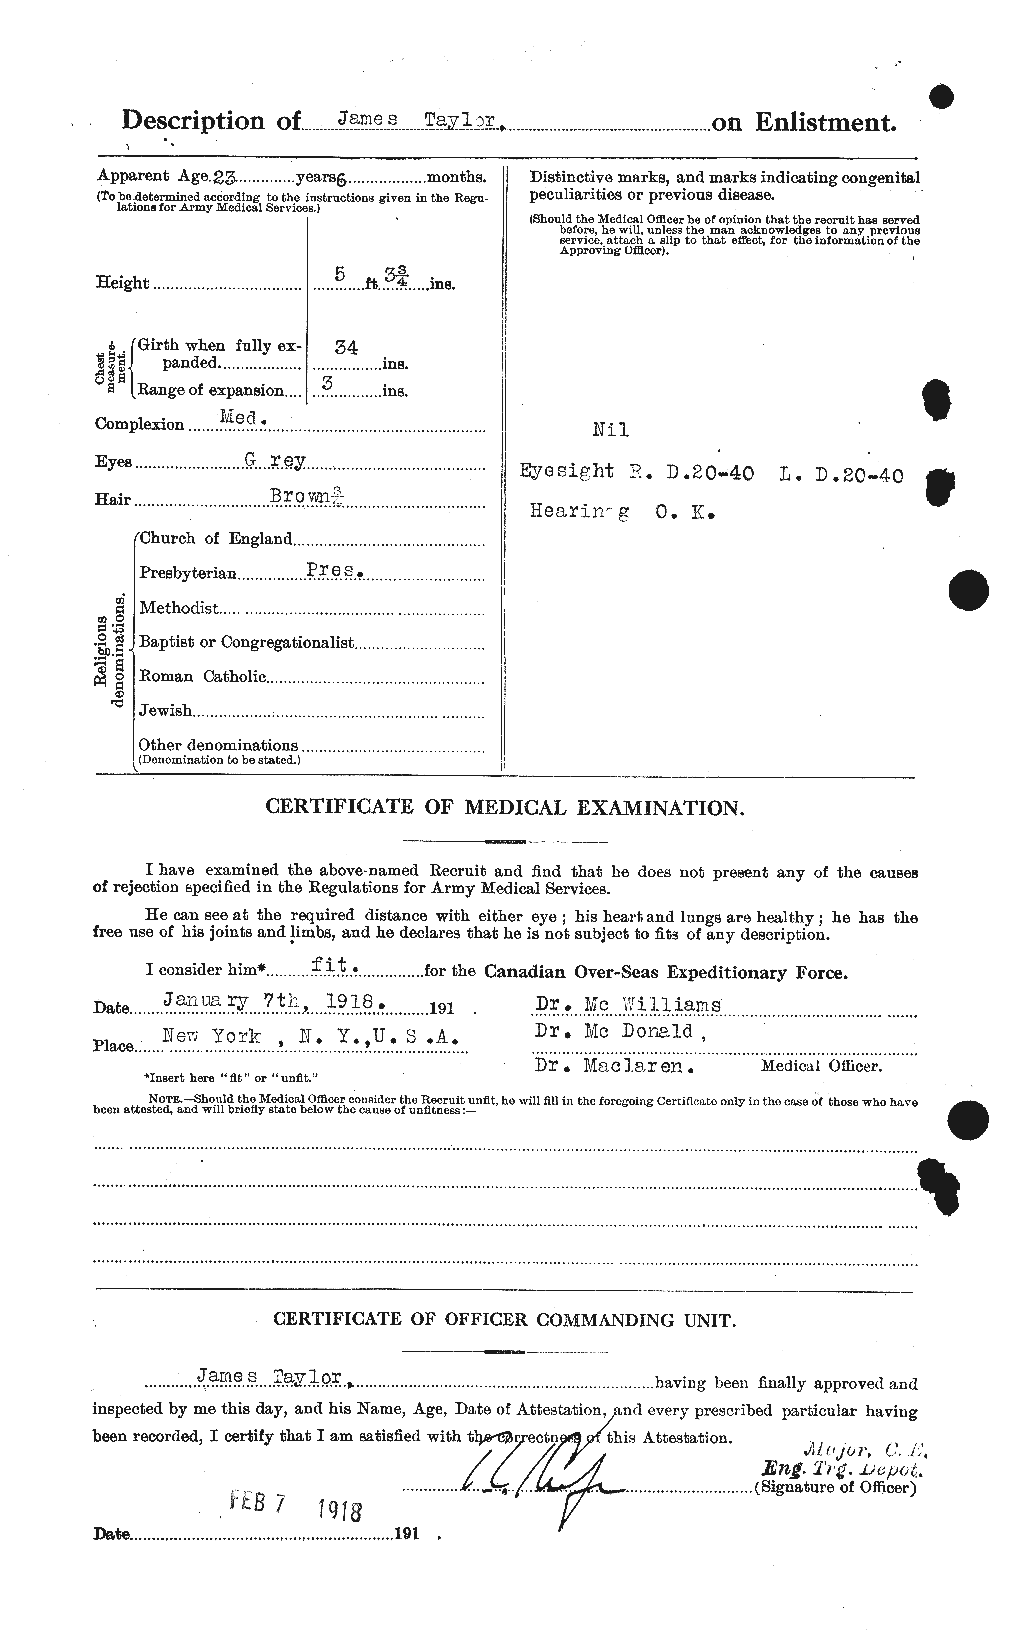 Dossiers du Personnel de la Première Guerre mondiale - CEC 626666b